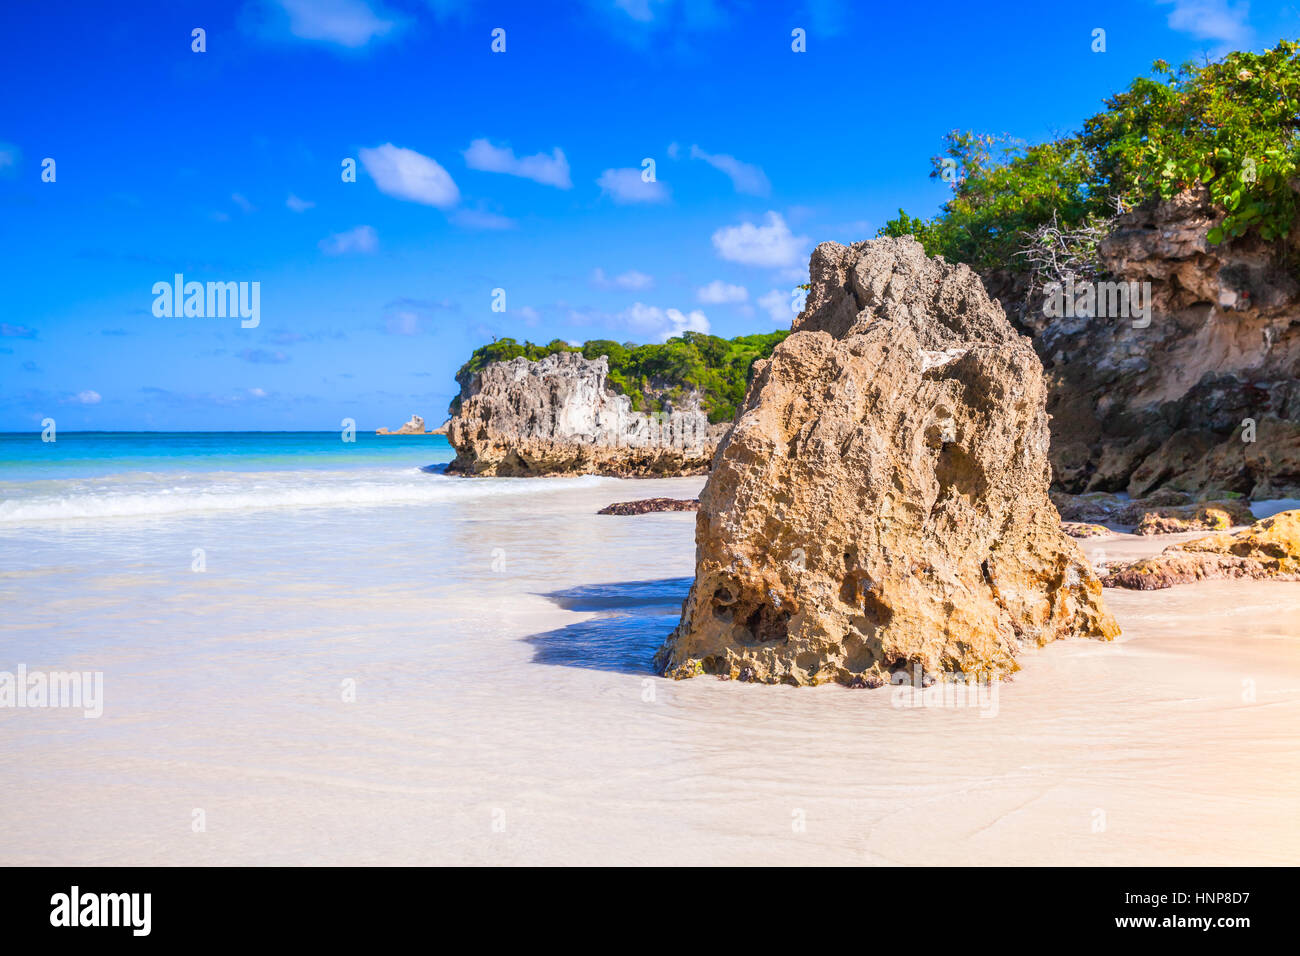 Las rocas de la playa de Macao, el paisaje costero de la República Dominicana, la isla Hispaniola Foto de stock